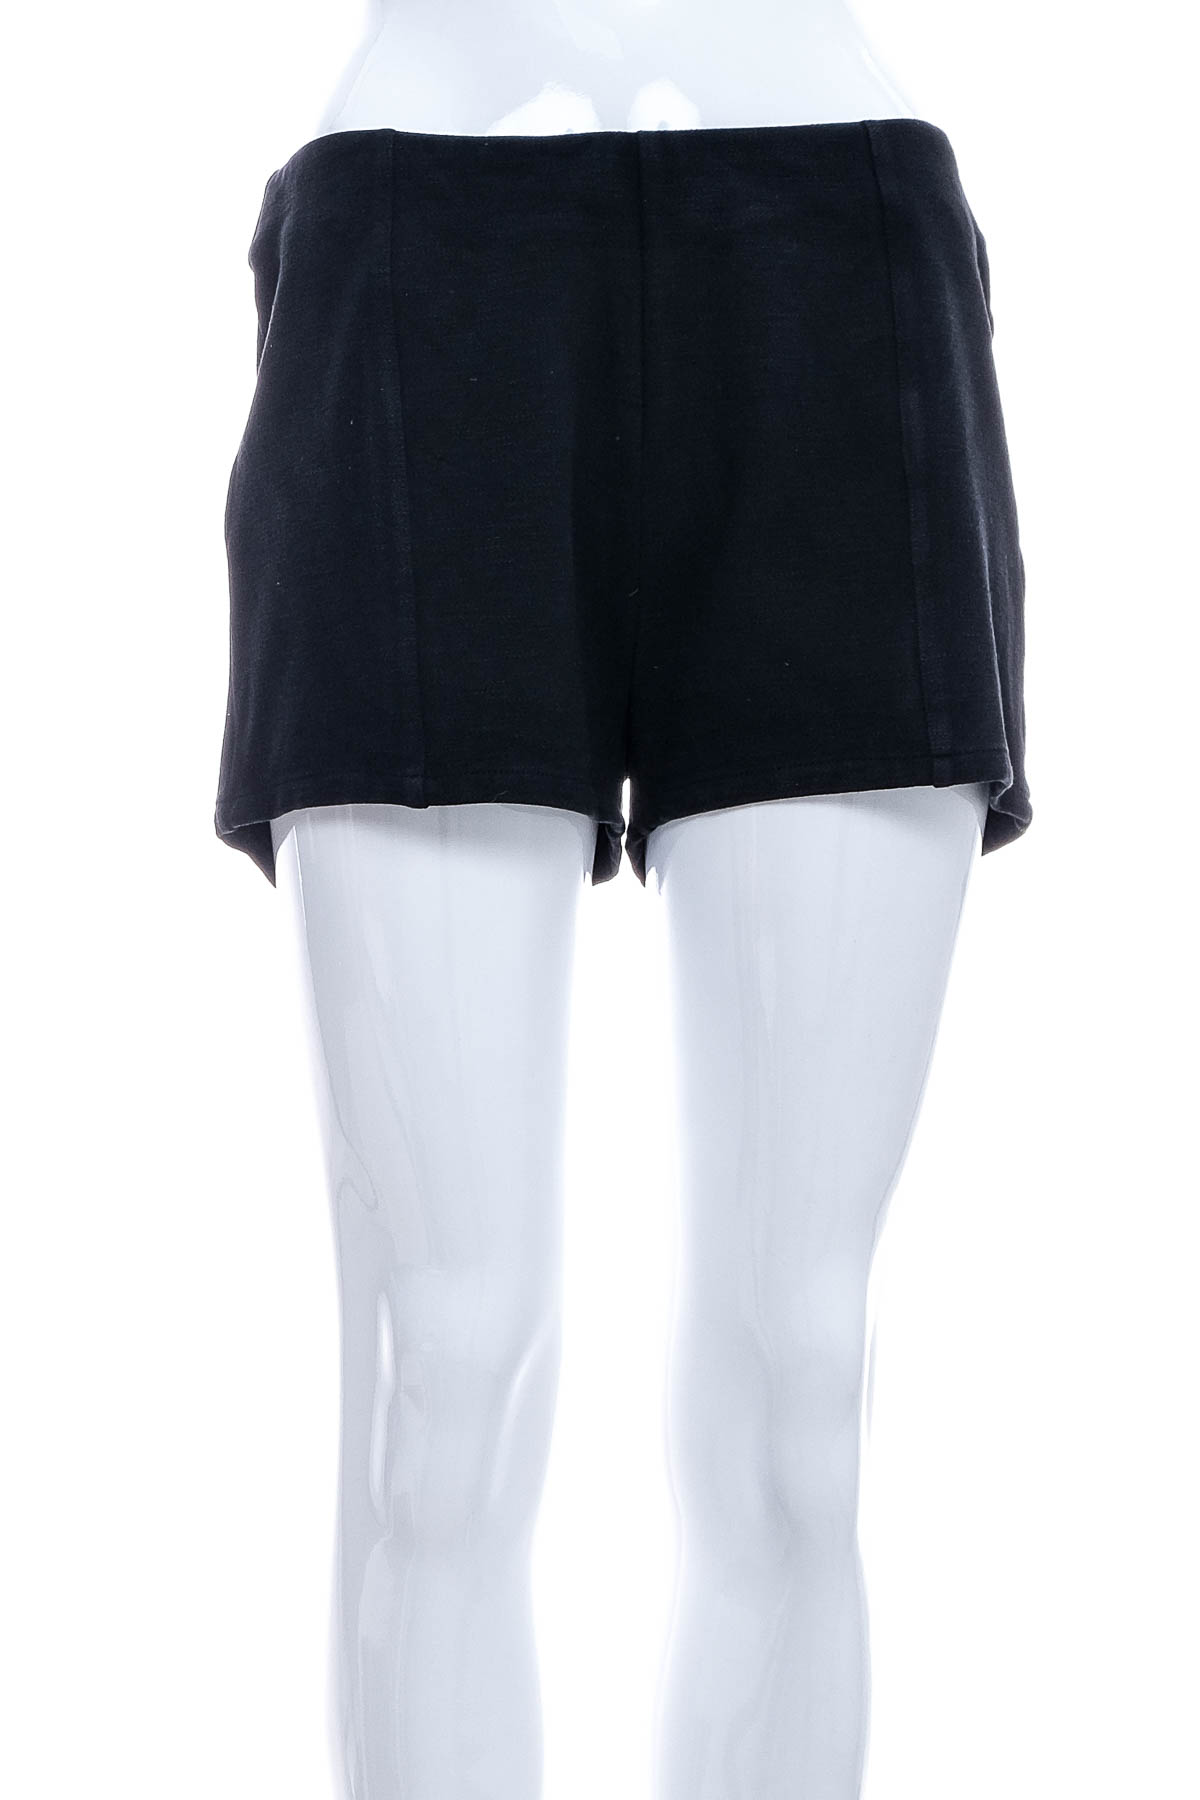 Female shorts - Qbg - 0